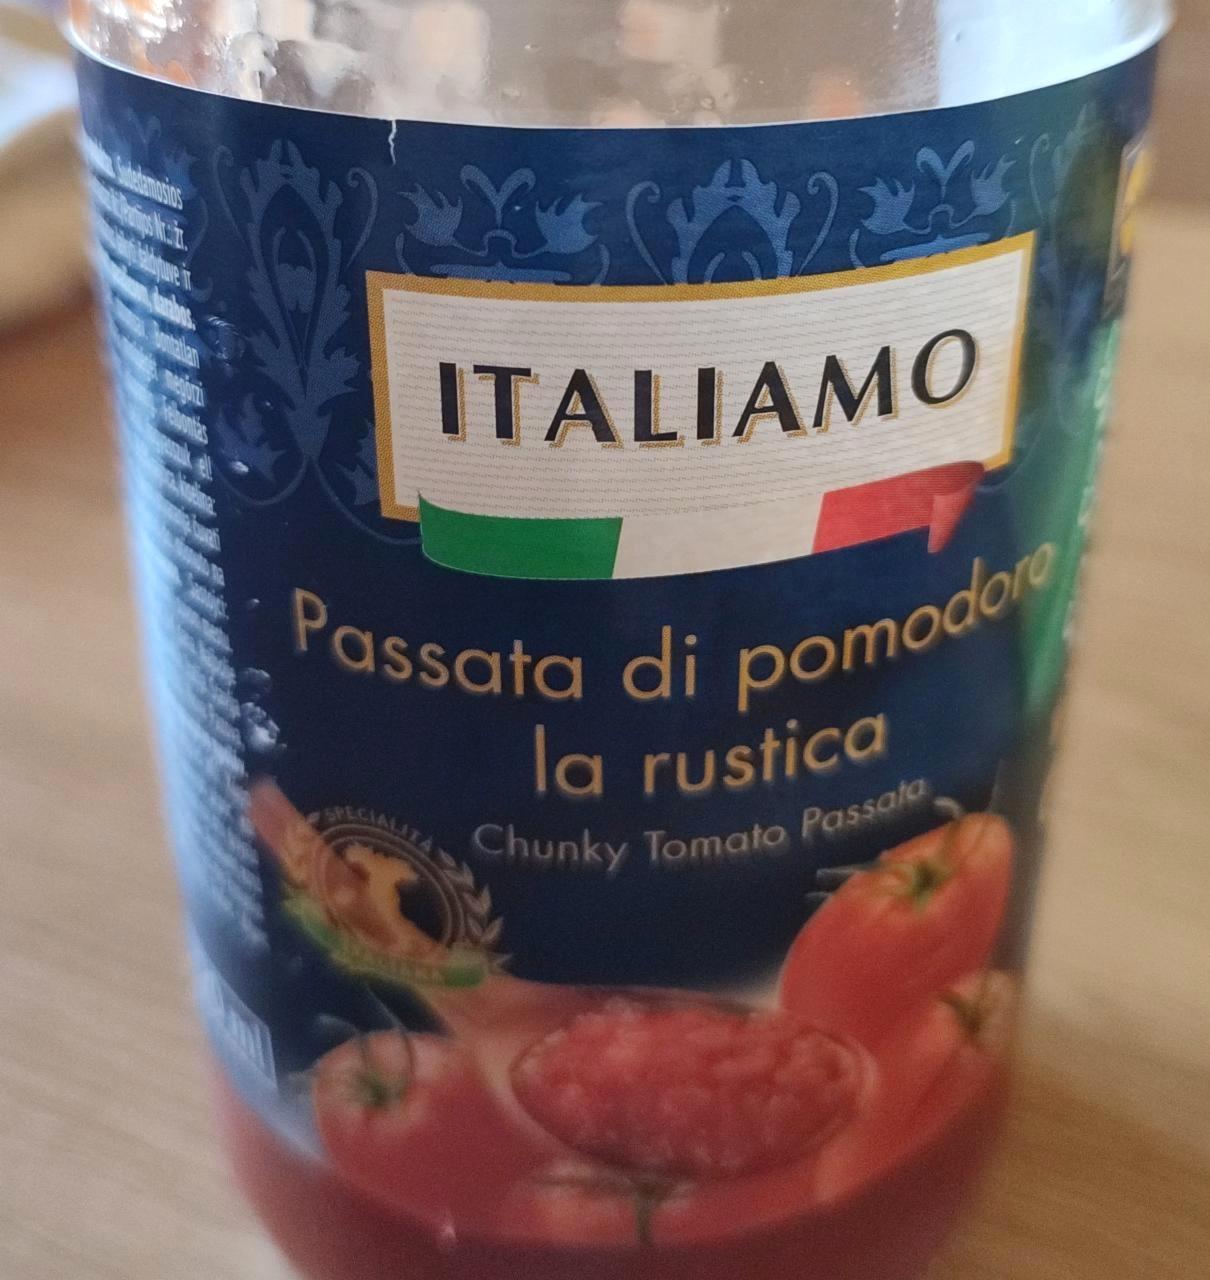 Képek - Passata di pomodoro la rustica Italiamo